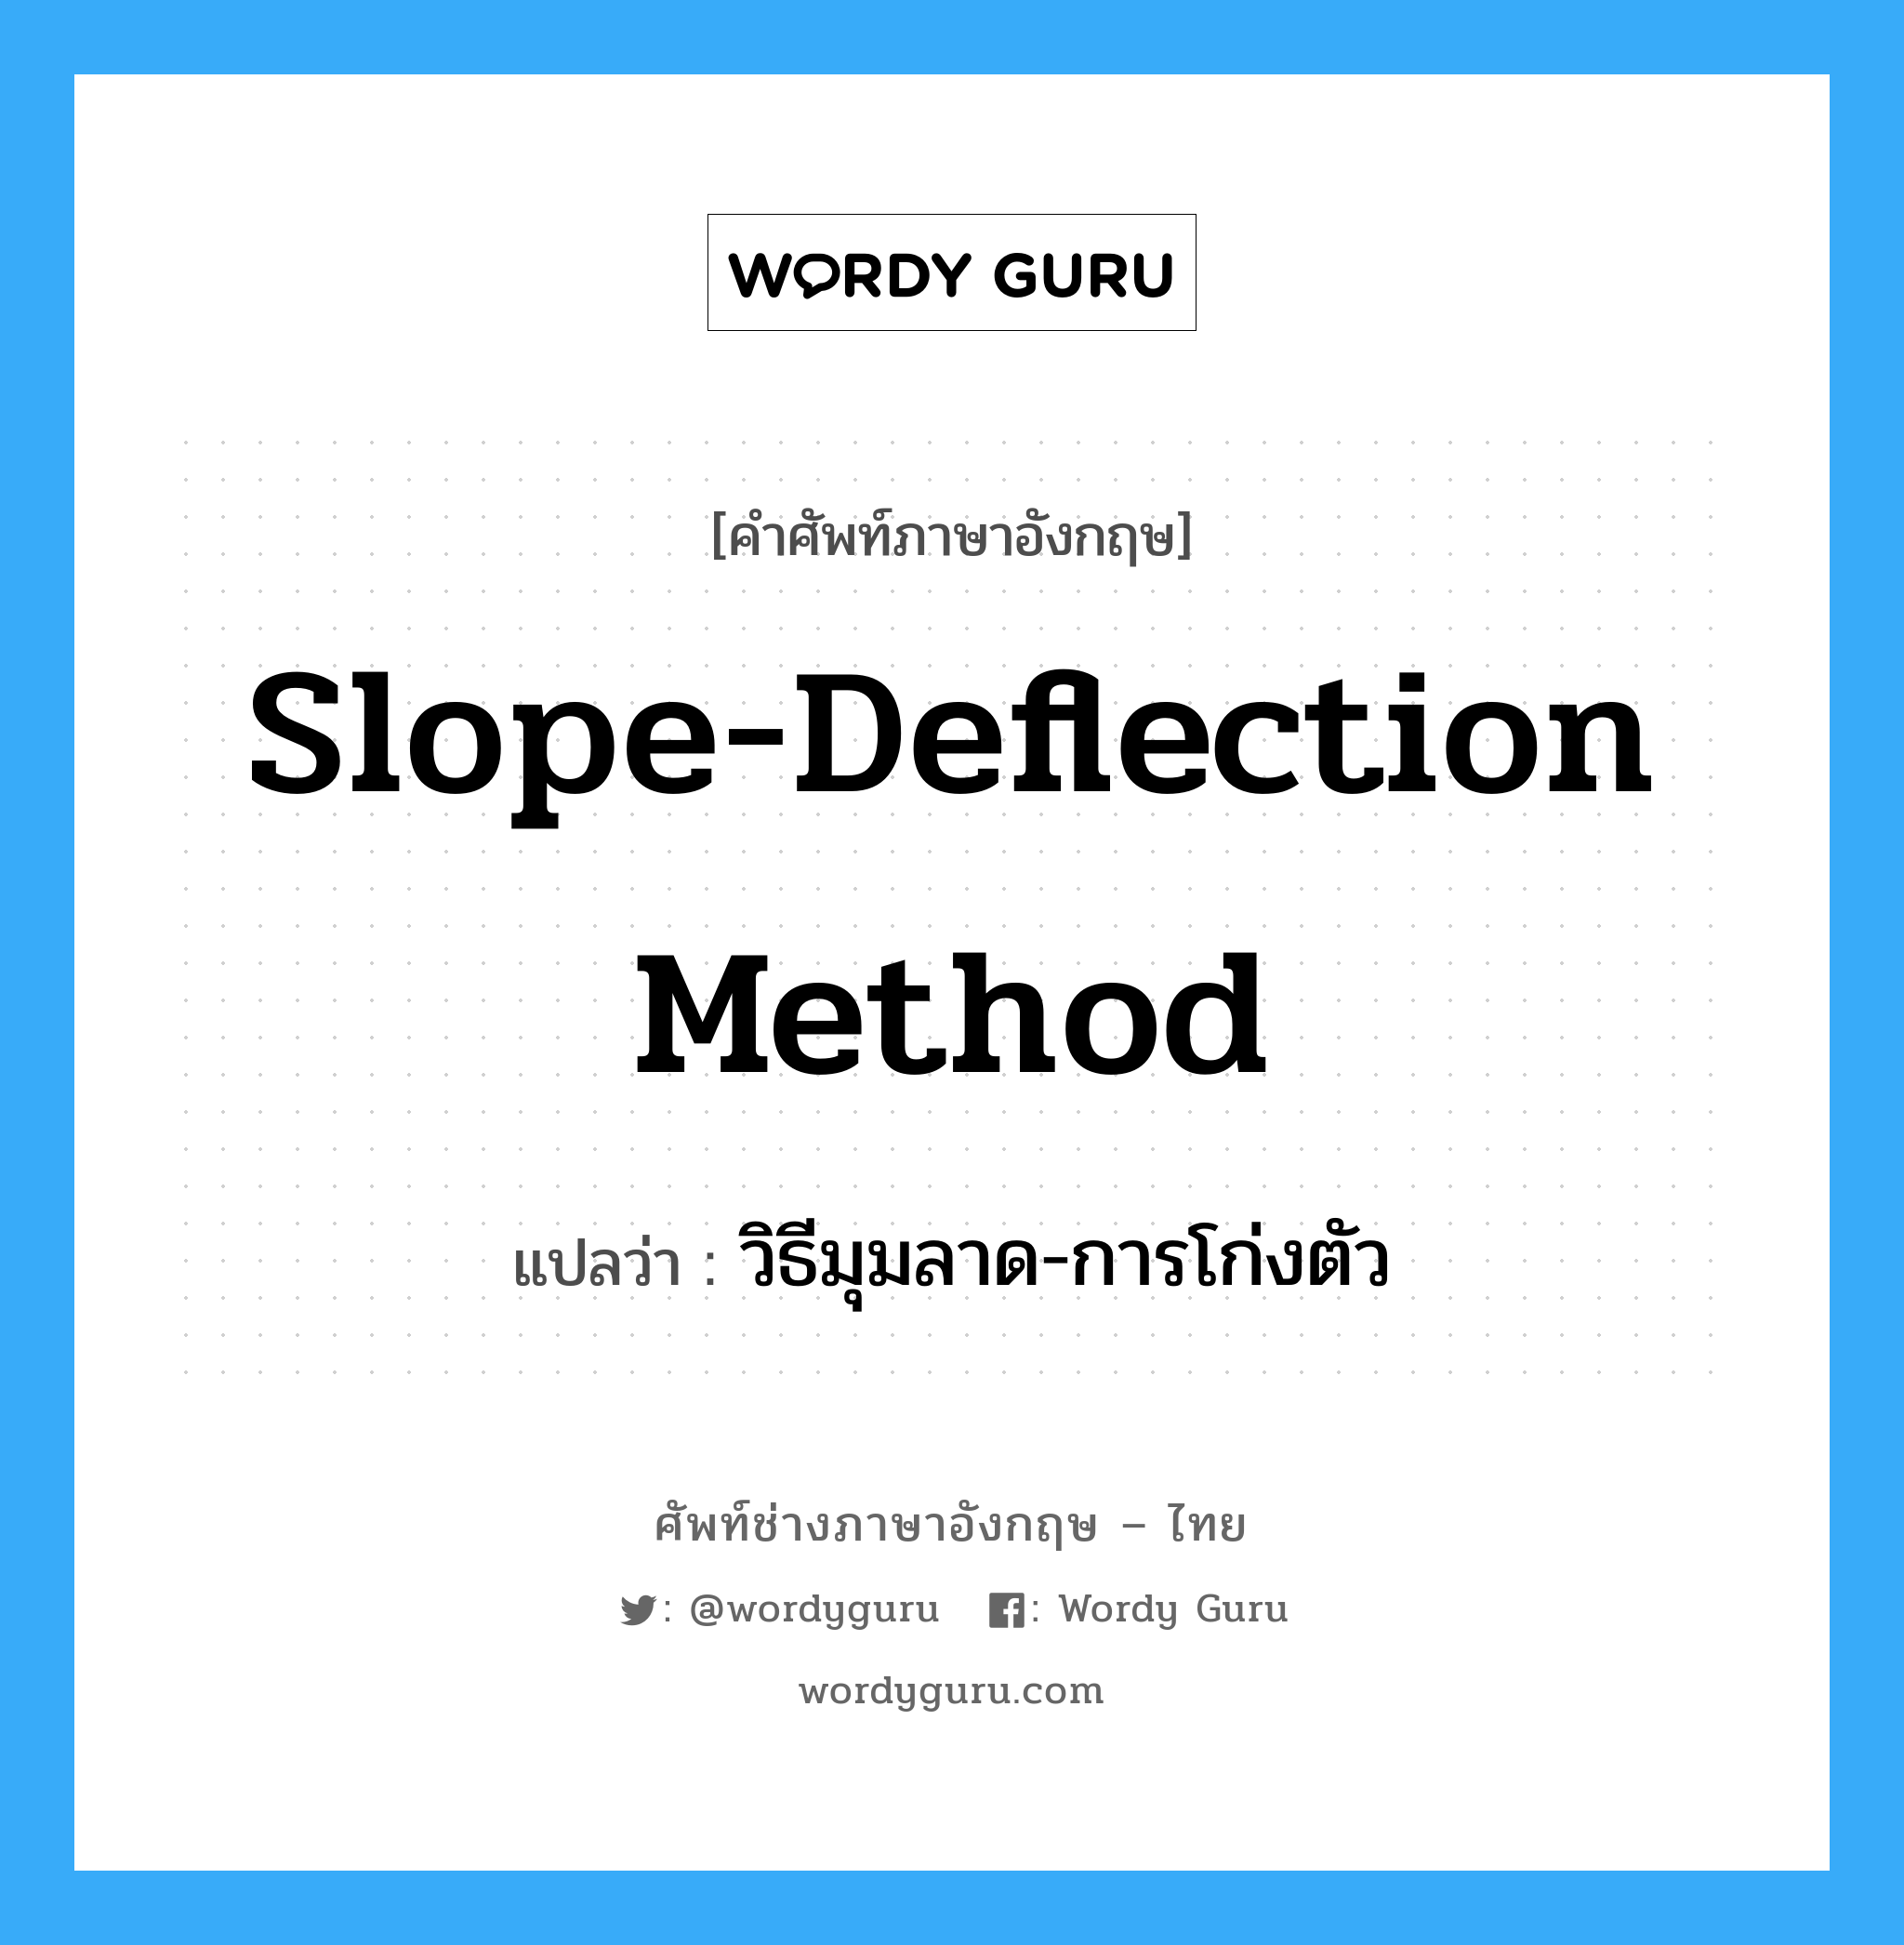 วิธีมุมลาด-การโก่งตัว ภาษาอังกฤษ?, คำศัพท์ช่างภาษาอังกฤษ - ไทย วิธีมุมลาด-การโก่งตัว คำศัพท์ภาษาอังกฤษ วิธีมุมลาด-การโก่งตัว แปลว่า Slope-Deflection Method